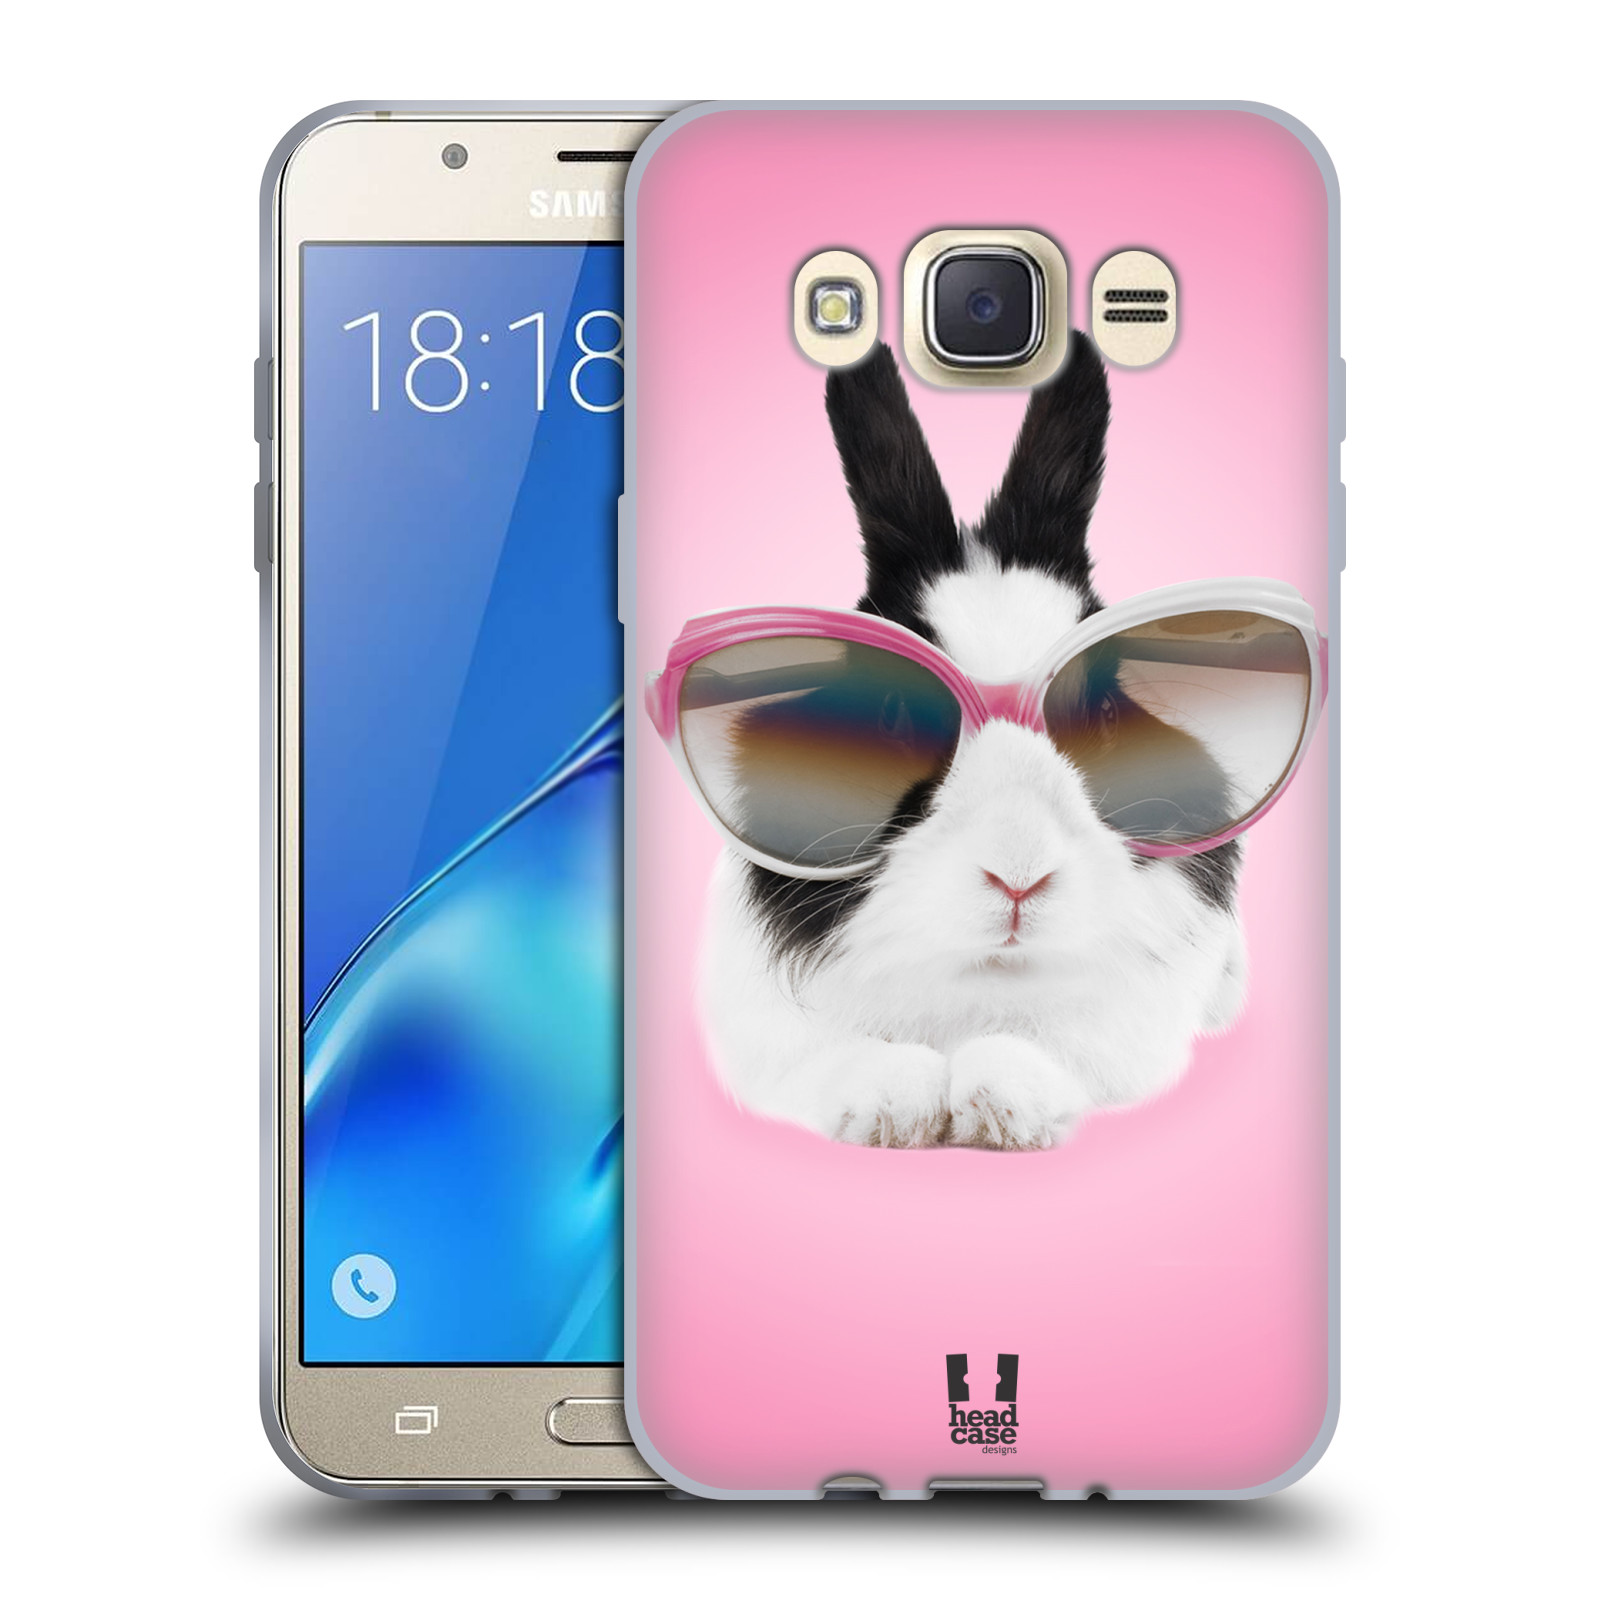 HEAD CASE silikonový obal, kryt na mobil Samsung Galaxy J7 2016 (J710, J710F) vzor Legrační zvířátka roztomilý králíček s brýlemi růžová